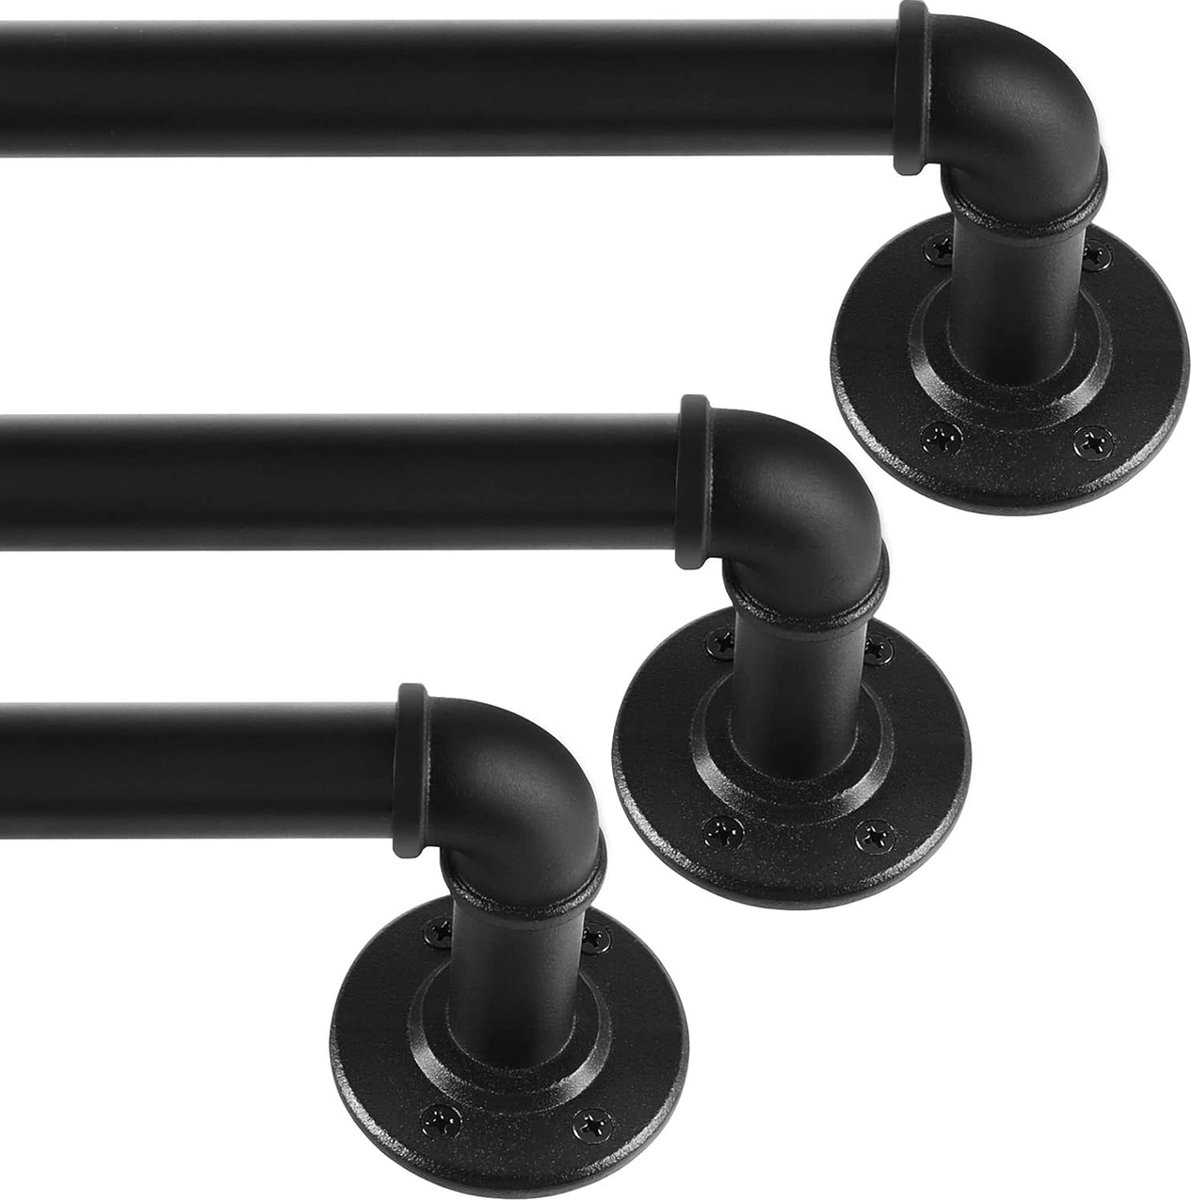 Zwarte uitschuifbare metalen gordijnroede x 3 sets, Industriële gordijnrails voor ringgordijnen, Industriële gordijnrailset voor ramen 67 cm-122 cm, Pakket van 3.